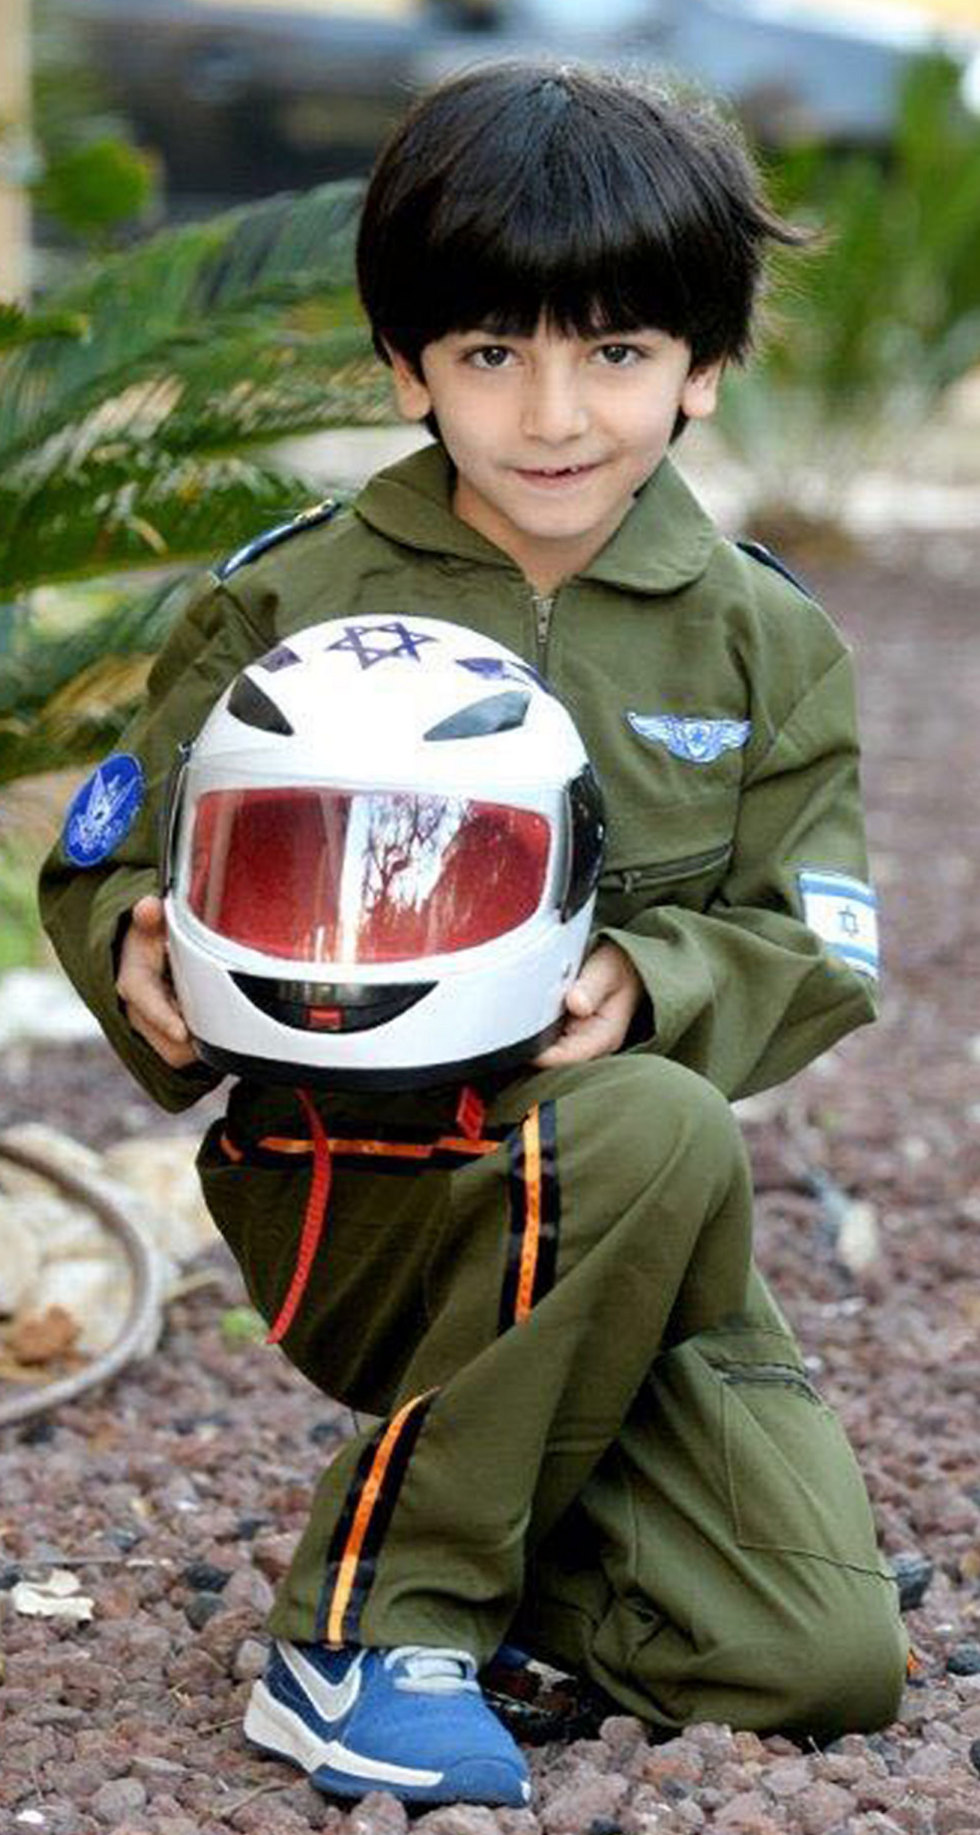 גיא קואנקס בן השבע מחולון התחפש לטייס (צילום: קובי קואנקס) (צילום: קובי קואנקס)